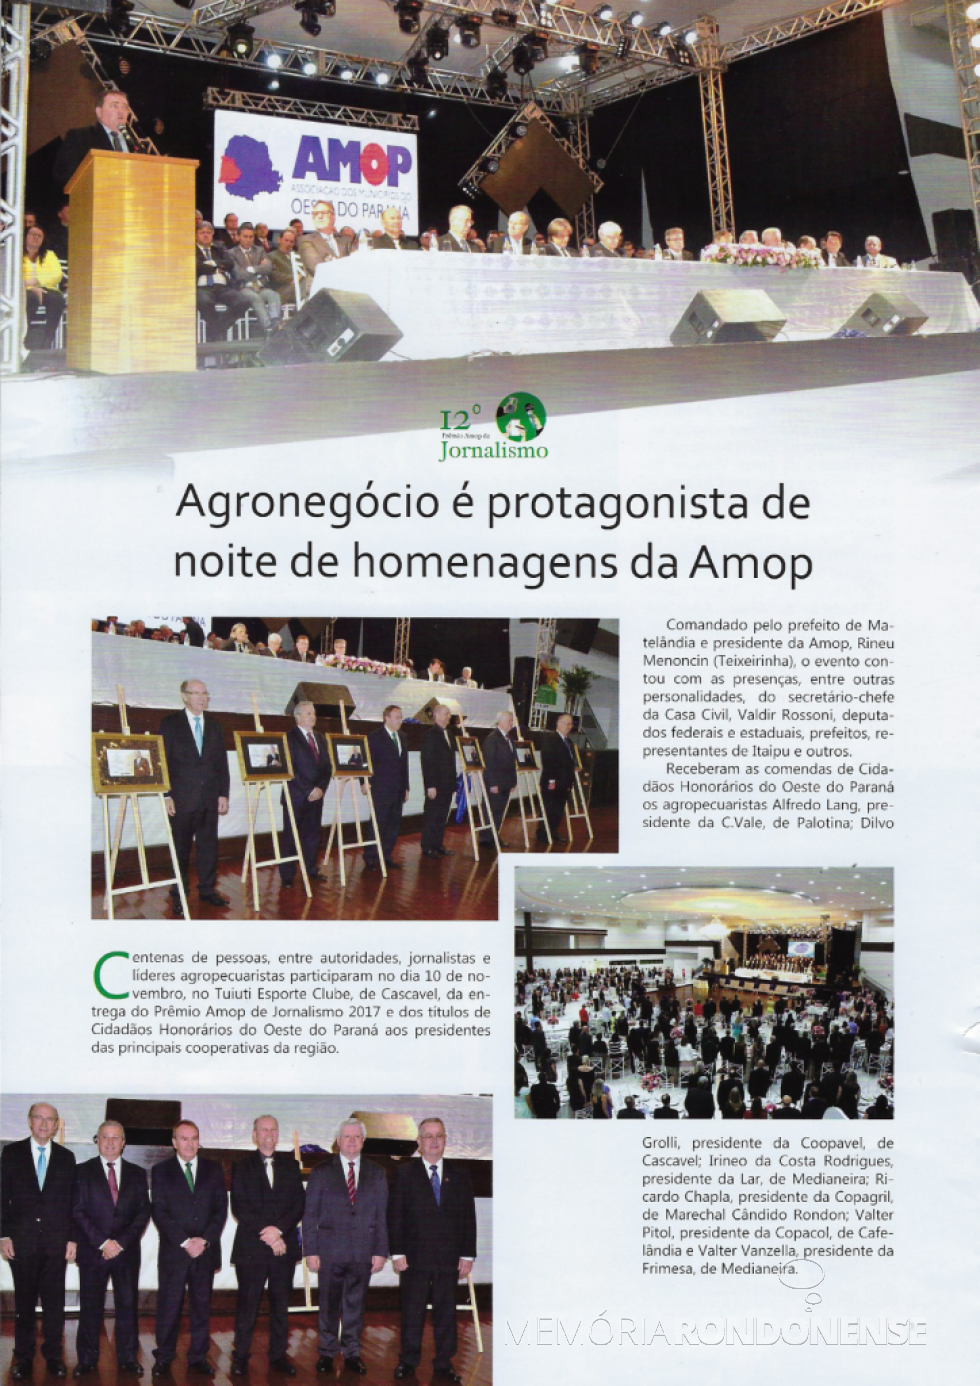 || Destaque da revista AMOP sobre a entrega dos Títulos de Cidadão Honorário aos diretores-presidentes das cooperativas do Oeste do Paraná, em novembro de 2017. 
Imagem: Revista AMOP - FOTO 22 - 